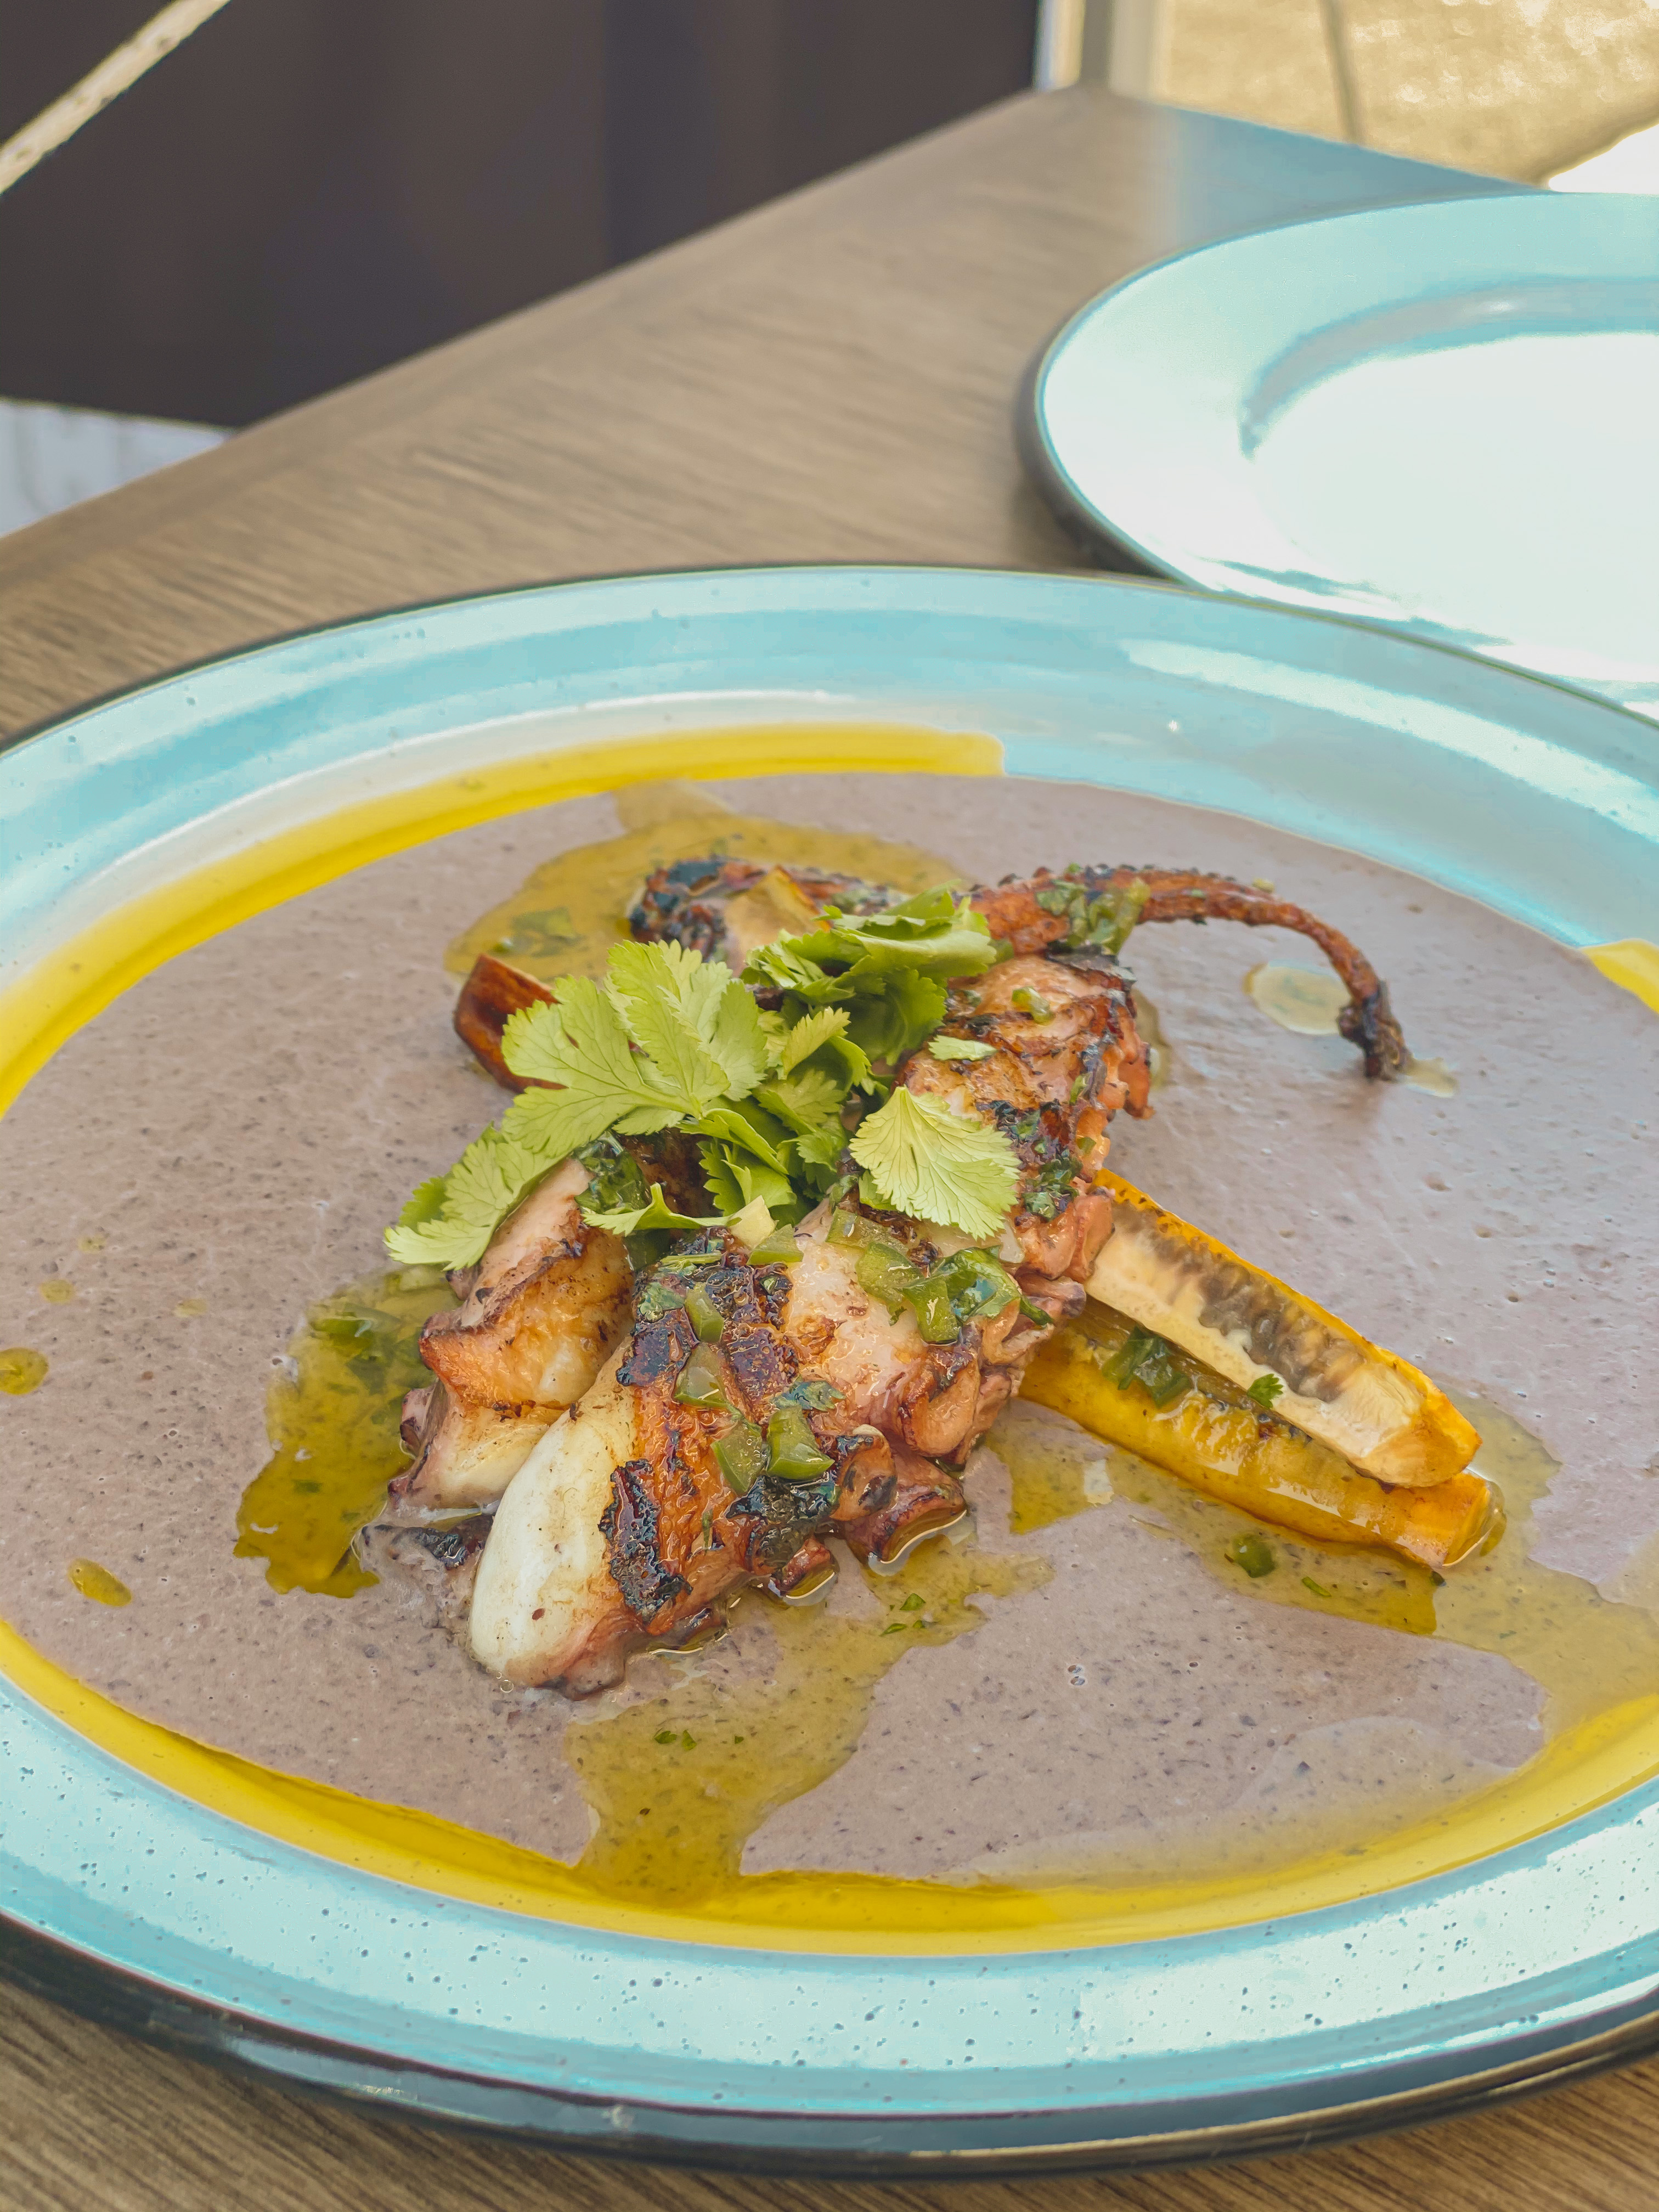 Best New Restaurant in San Diego: El Cruce + 241, authentic Baja cuisine